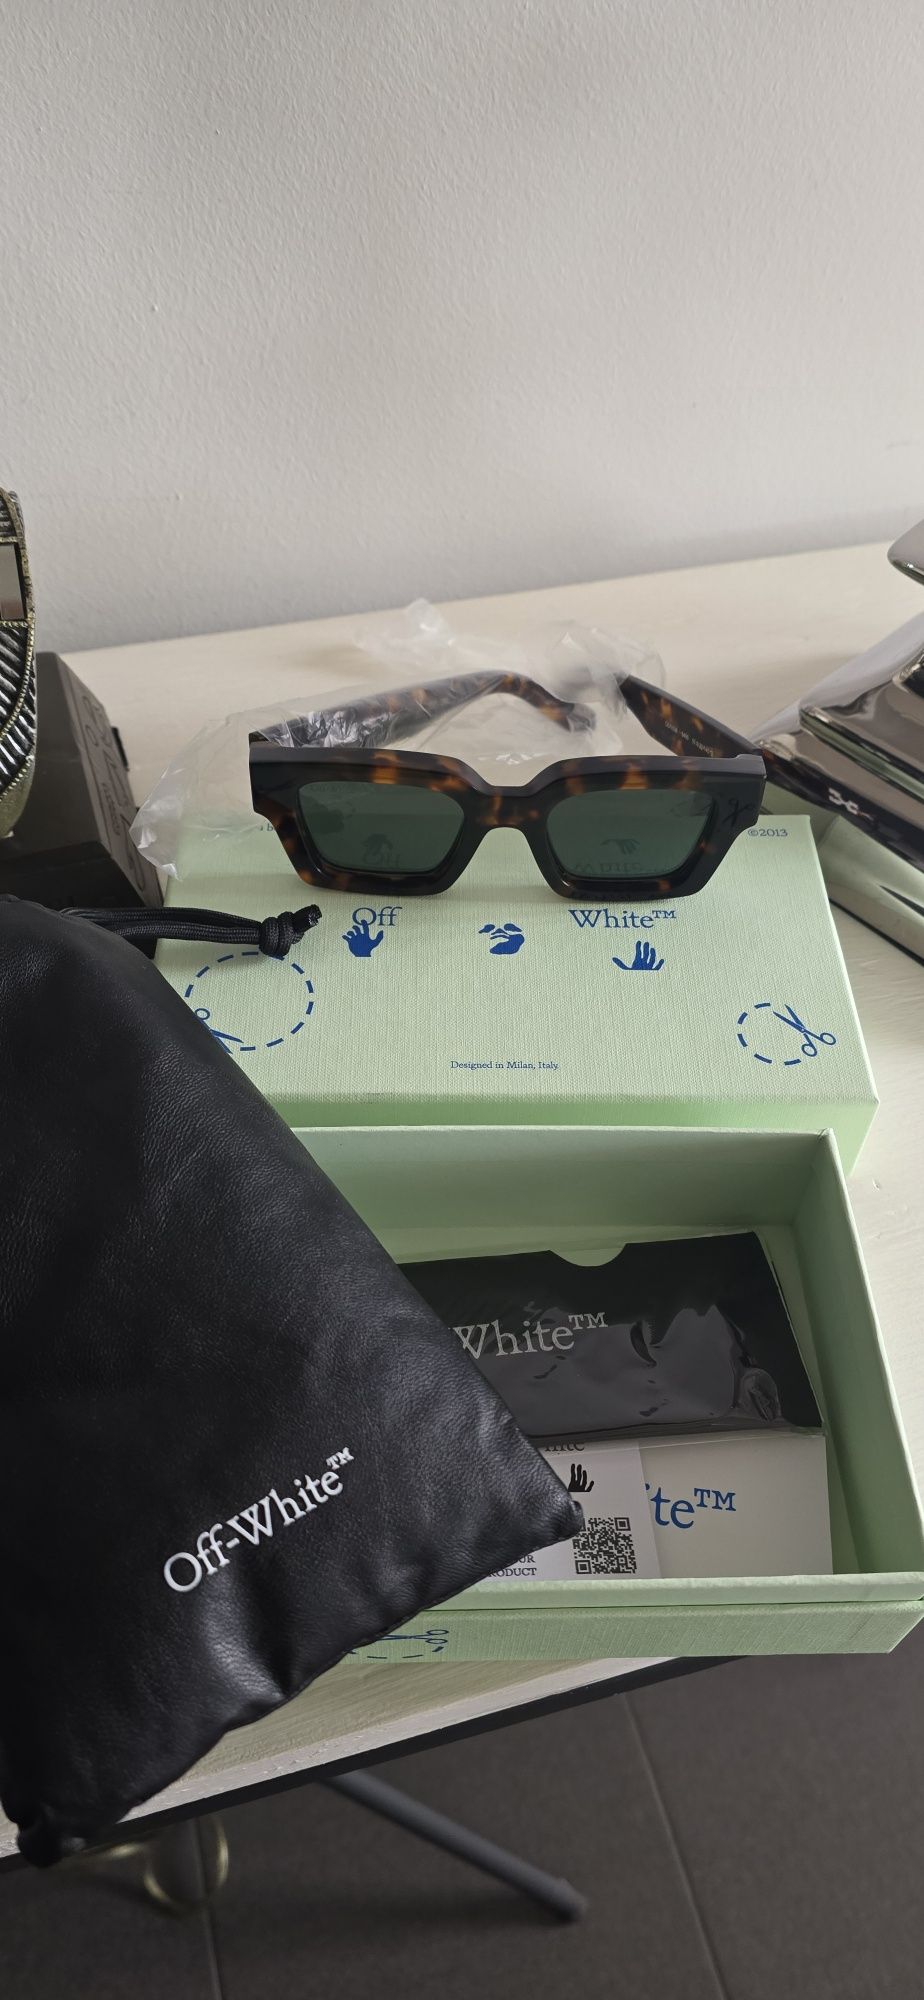 Off-White Virgil square-frame sunglasses